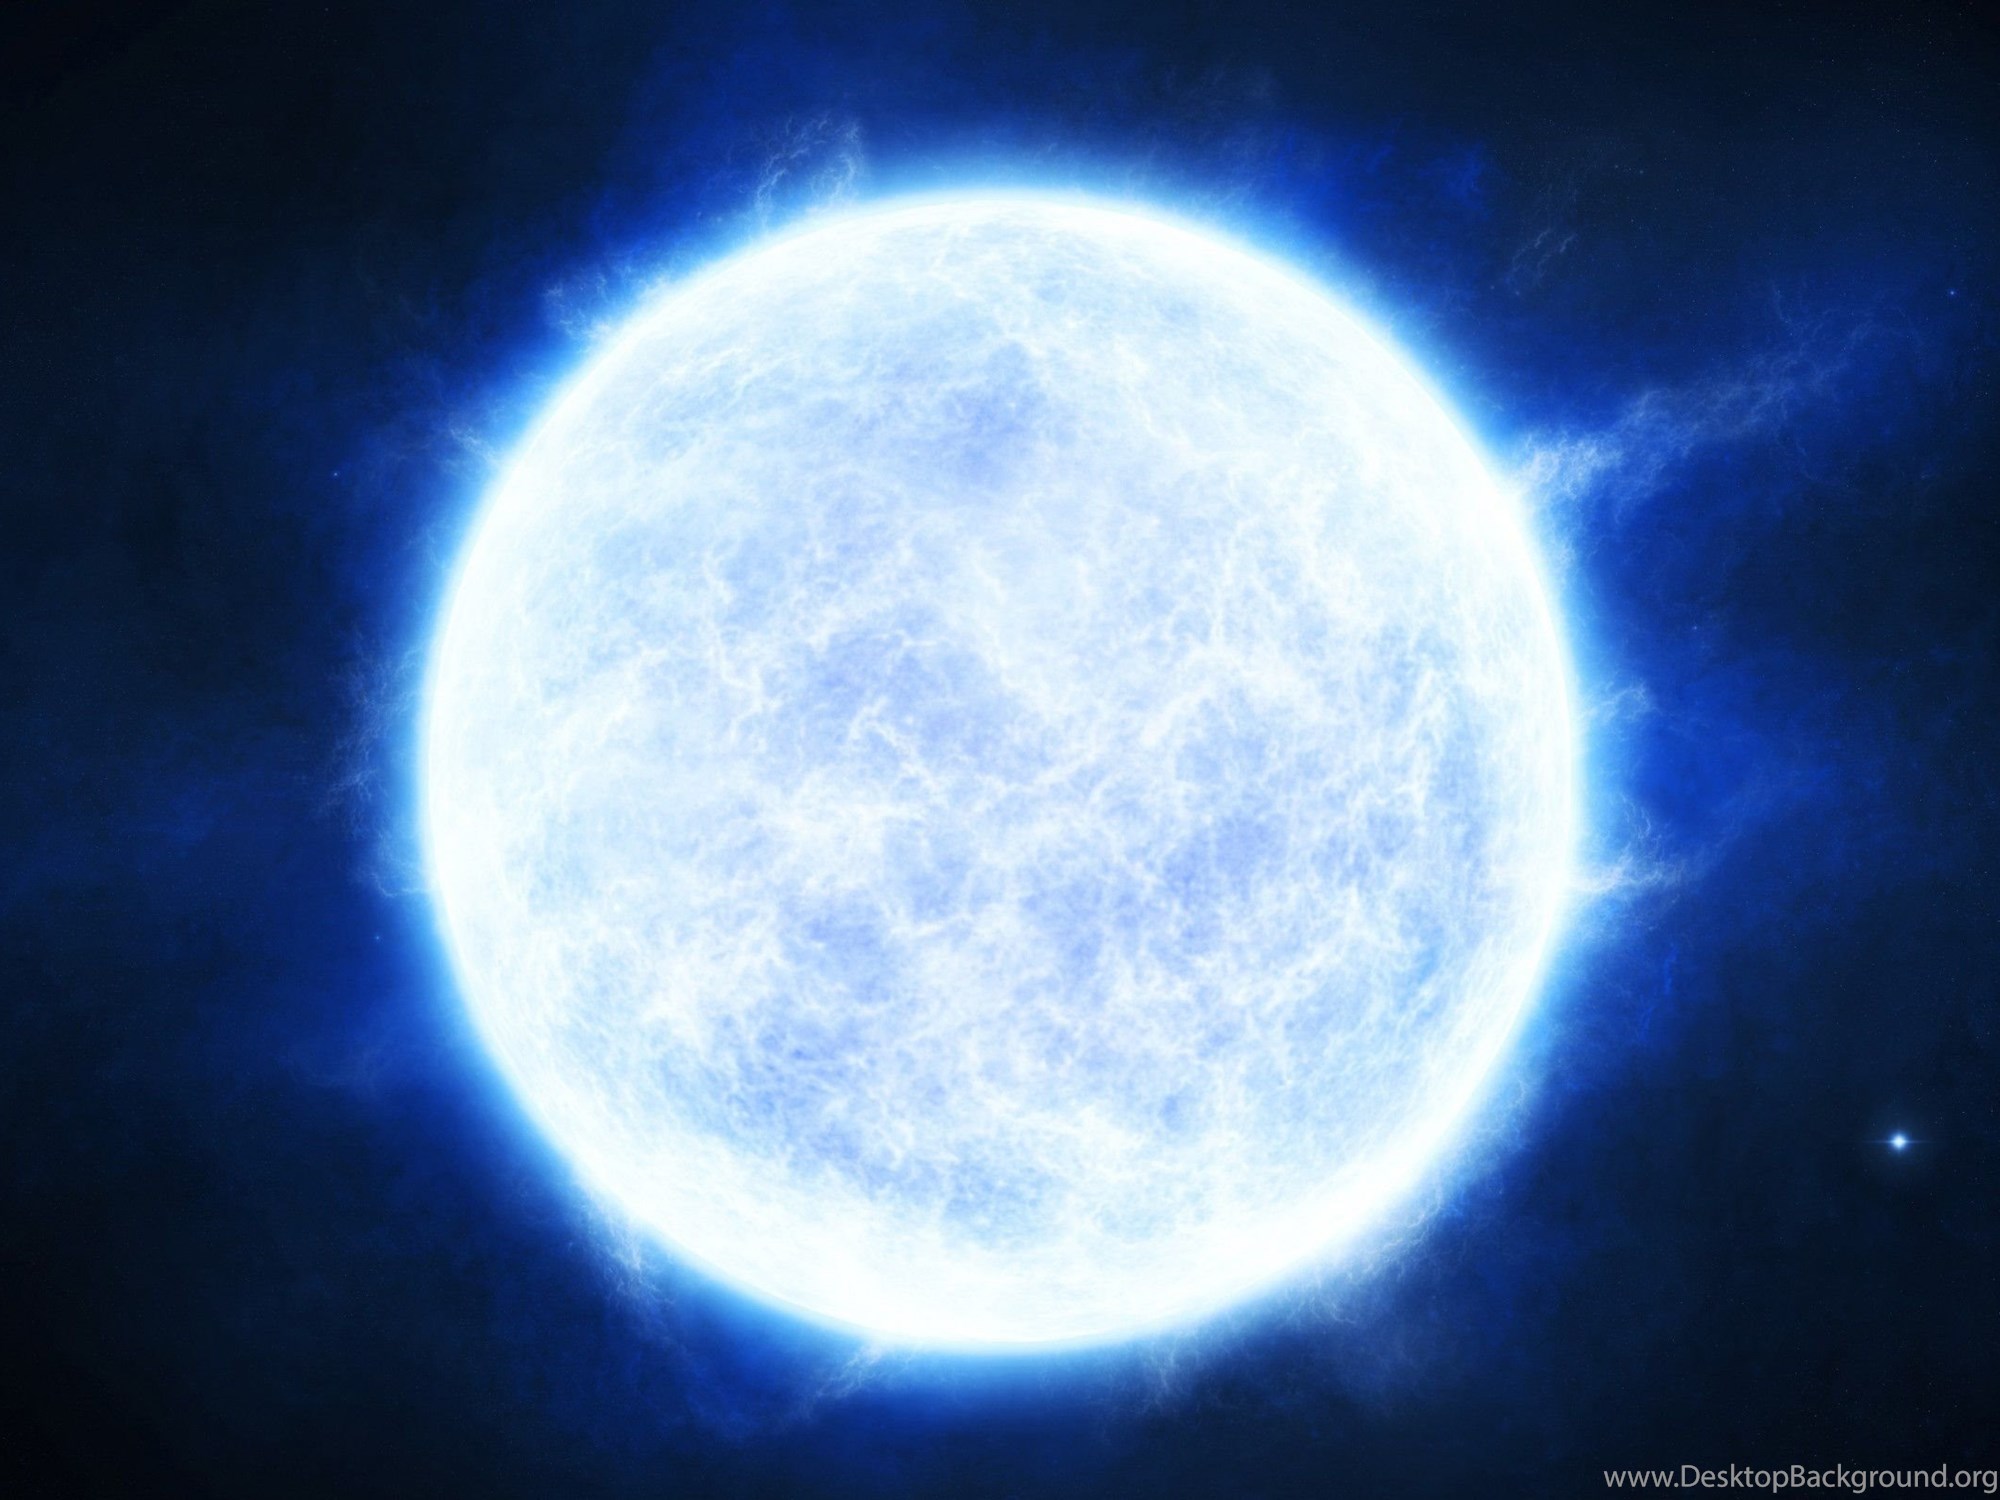 Голубой сверхгигант. R136a1 звезда. Голубой гипергигант звезда r136a1. Планета r136a1. Голубая звезда в космосе.